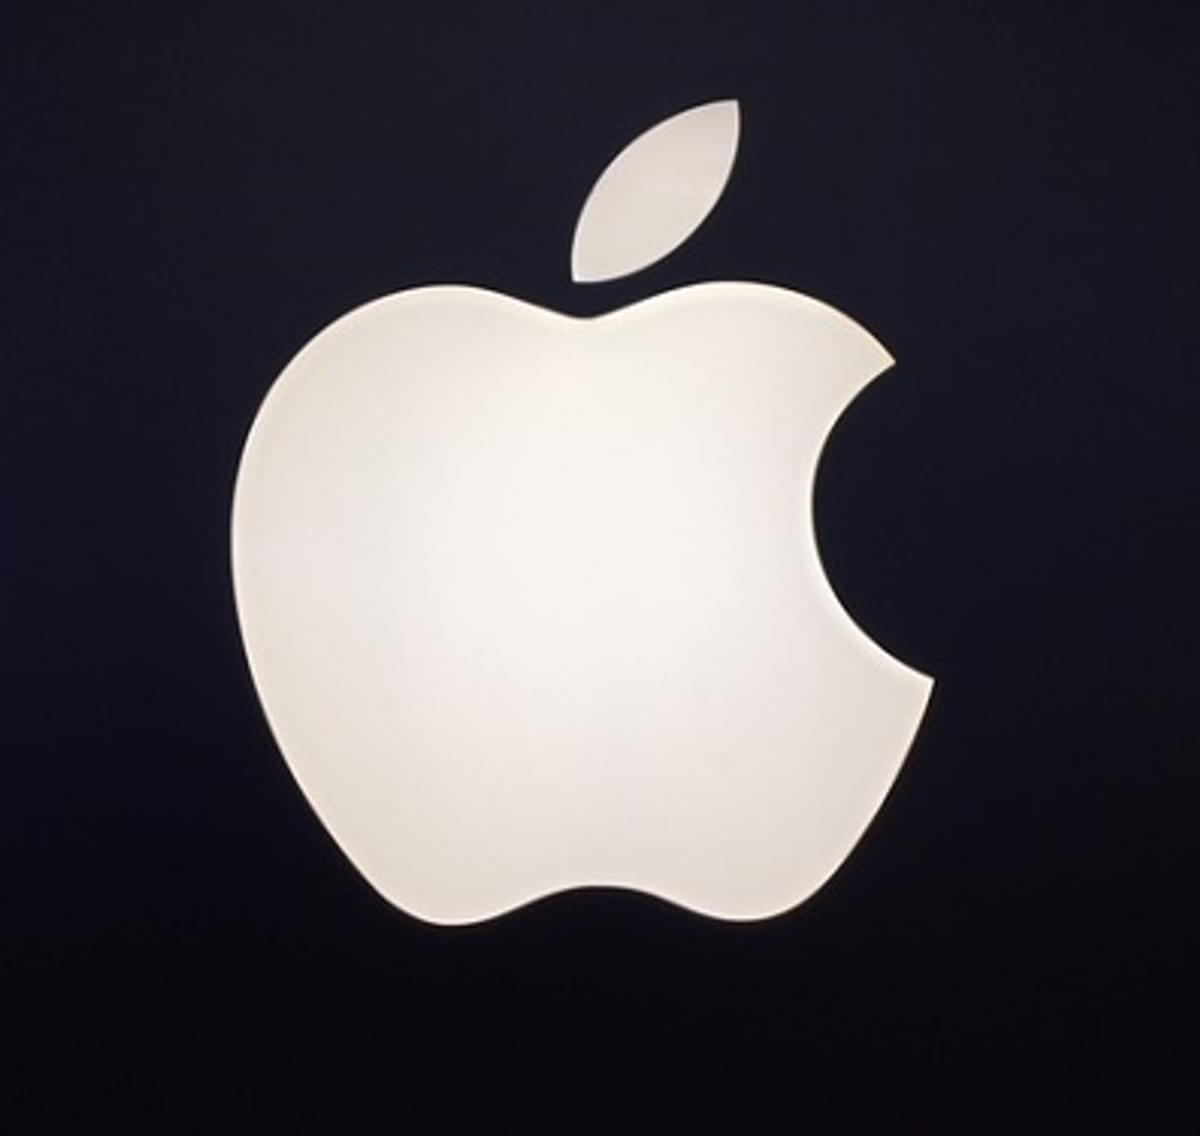 Apple toont goede cijfers over eerst kwartaal van zijn boekjaar image